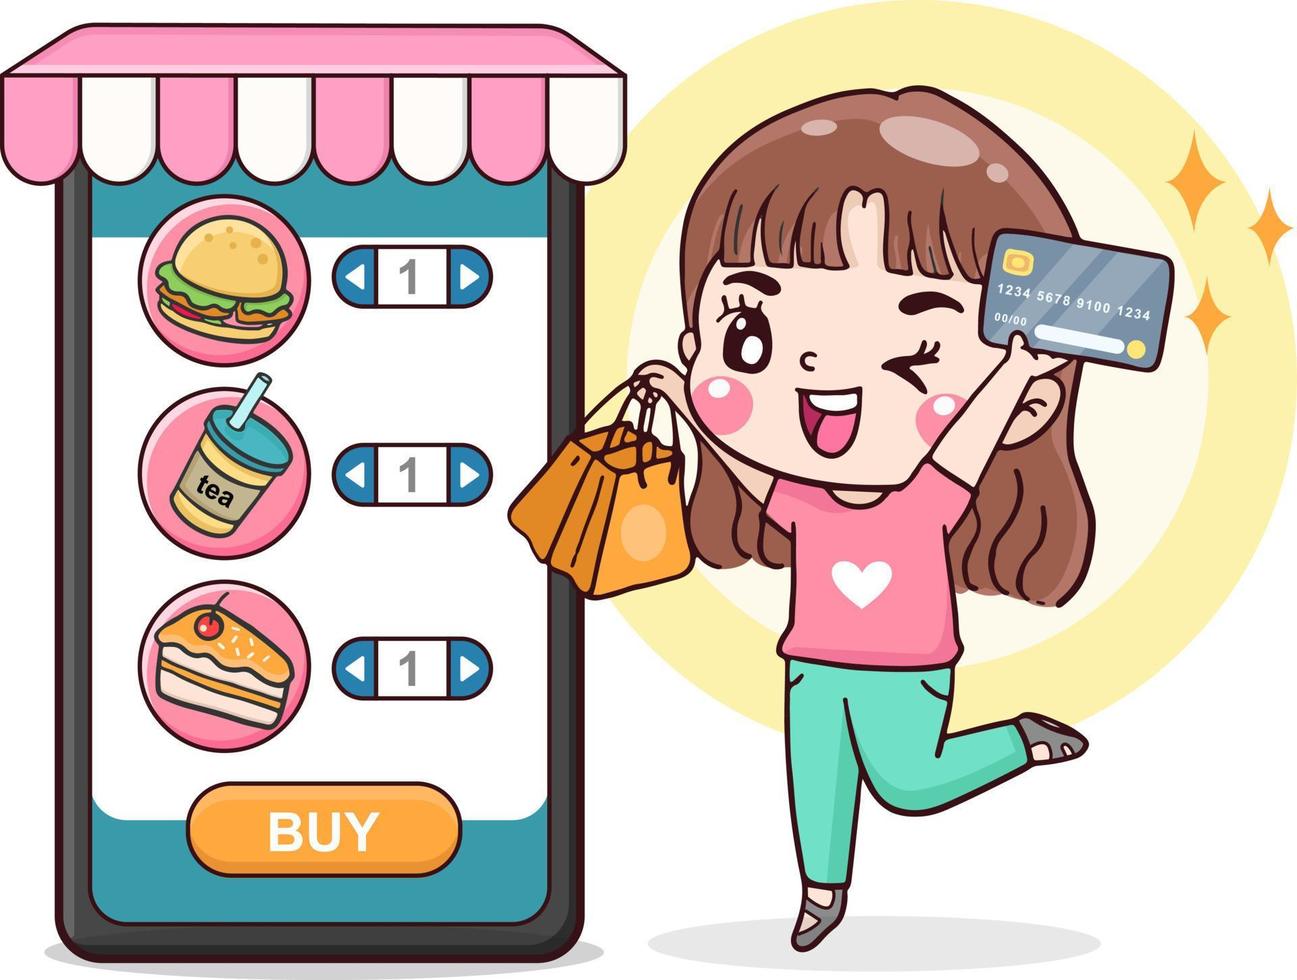 mulher de personagem de desenho animado fazendo compras on-line, pedir entrega de comida, aplicativo de compras móvel, segurando cartão de crédito e sacola de compras, ilustração plana vetor